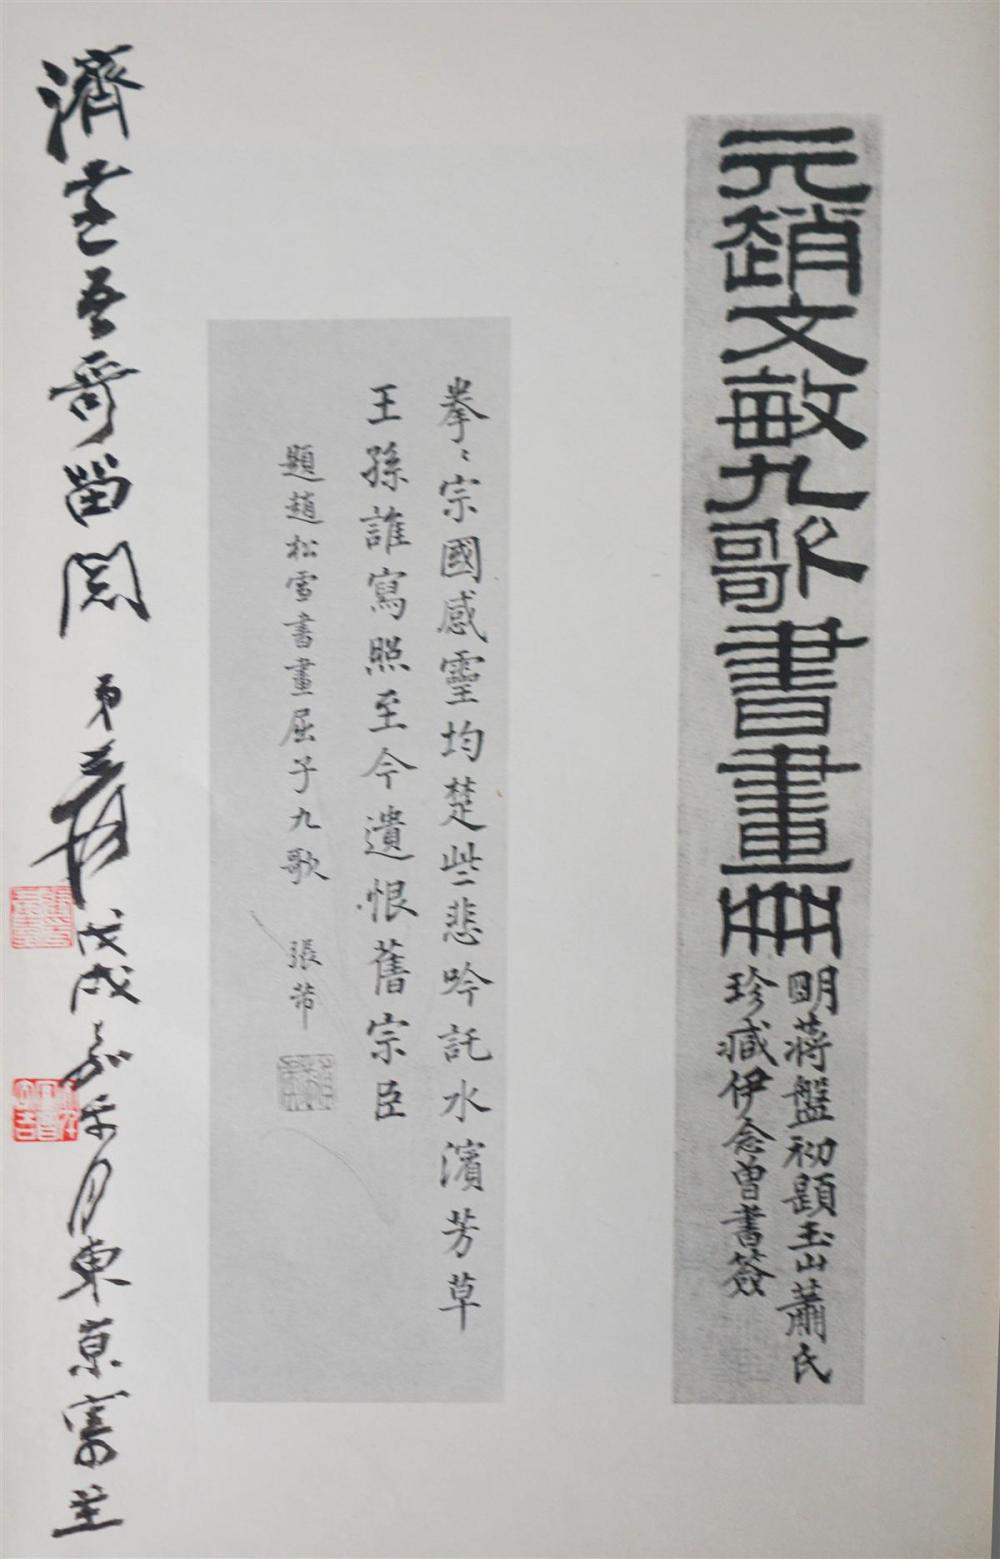 ZHANG DAQIAN (CHINESE, 1899-1983)